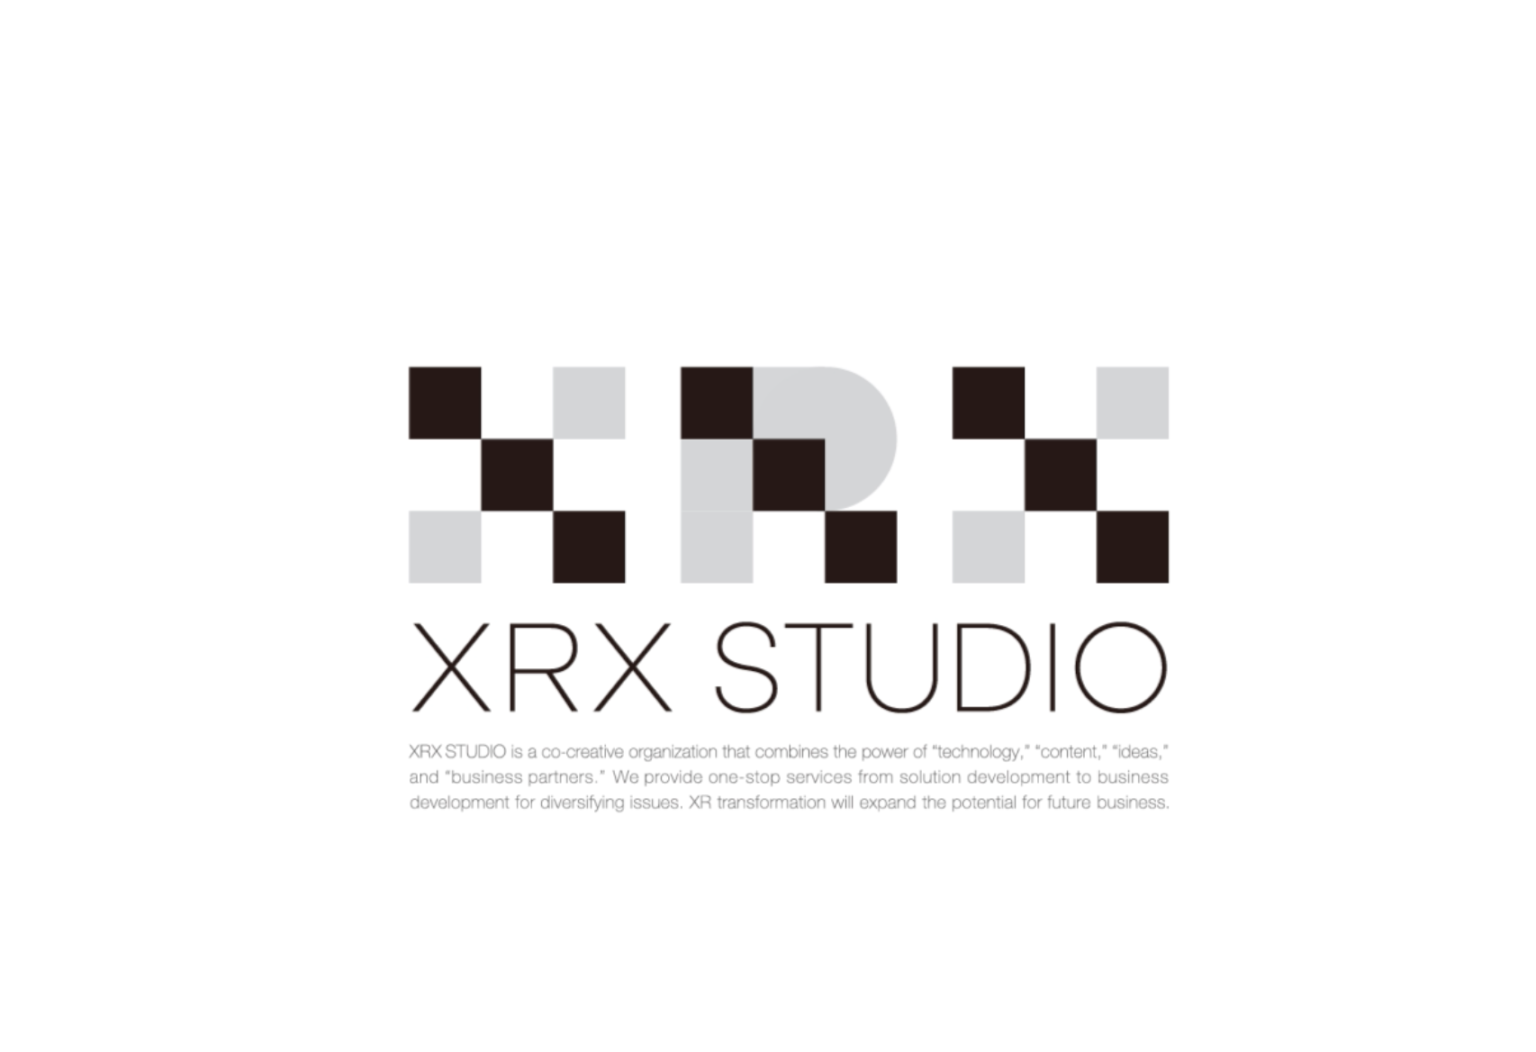 xrx_studio_1